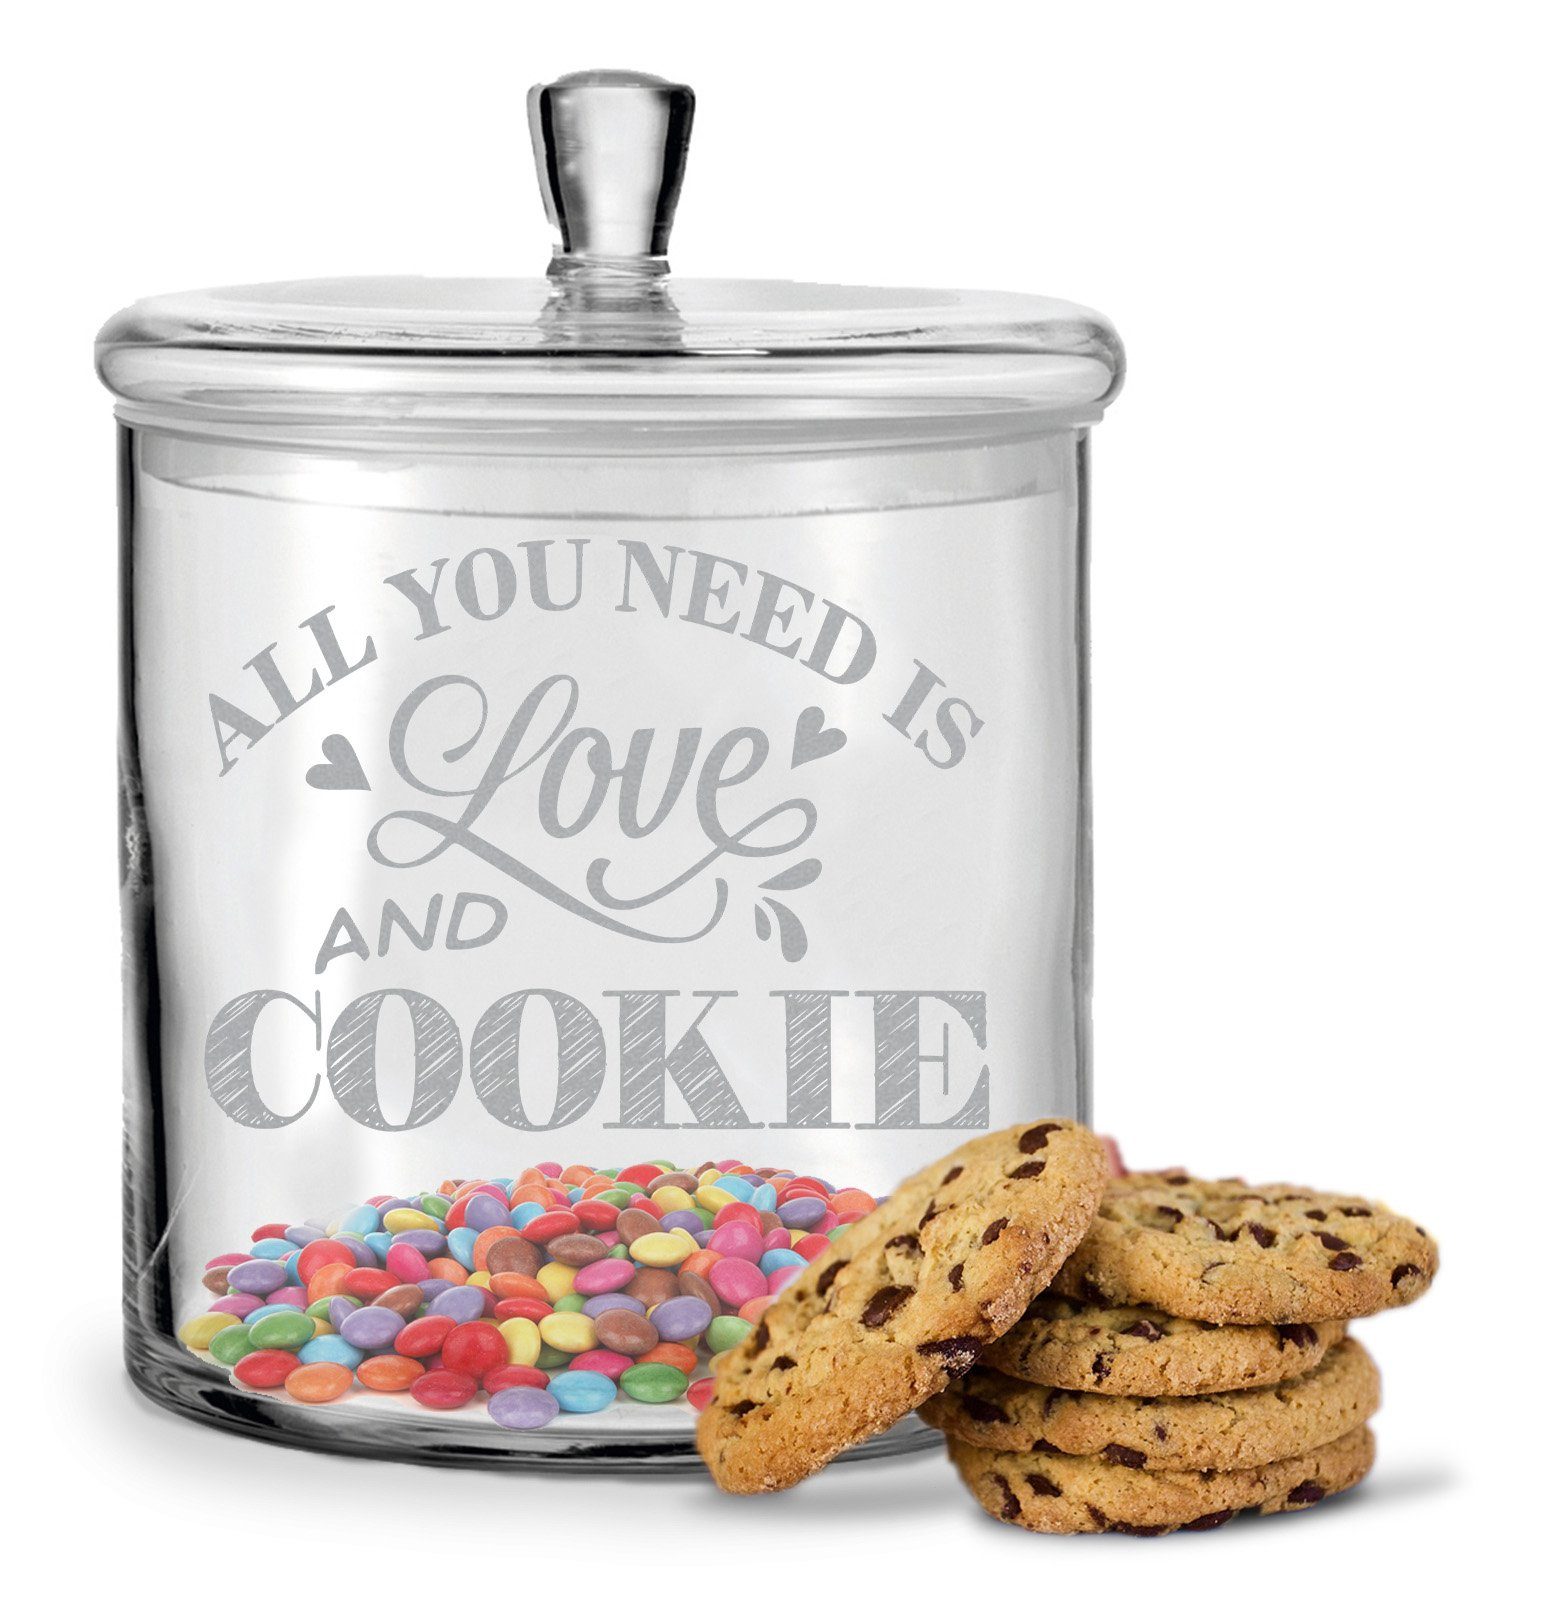 GRAVURZEILE Keksdose mit Gravur - All You Need is Love and Cookie - Keksdose mit Deckel, Glas, Handgefertigte Glasdose mit Deckel für Partner, Freunde & Familie